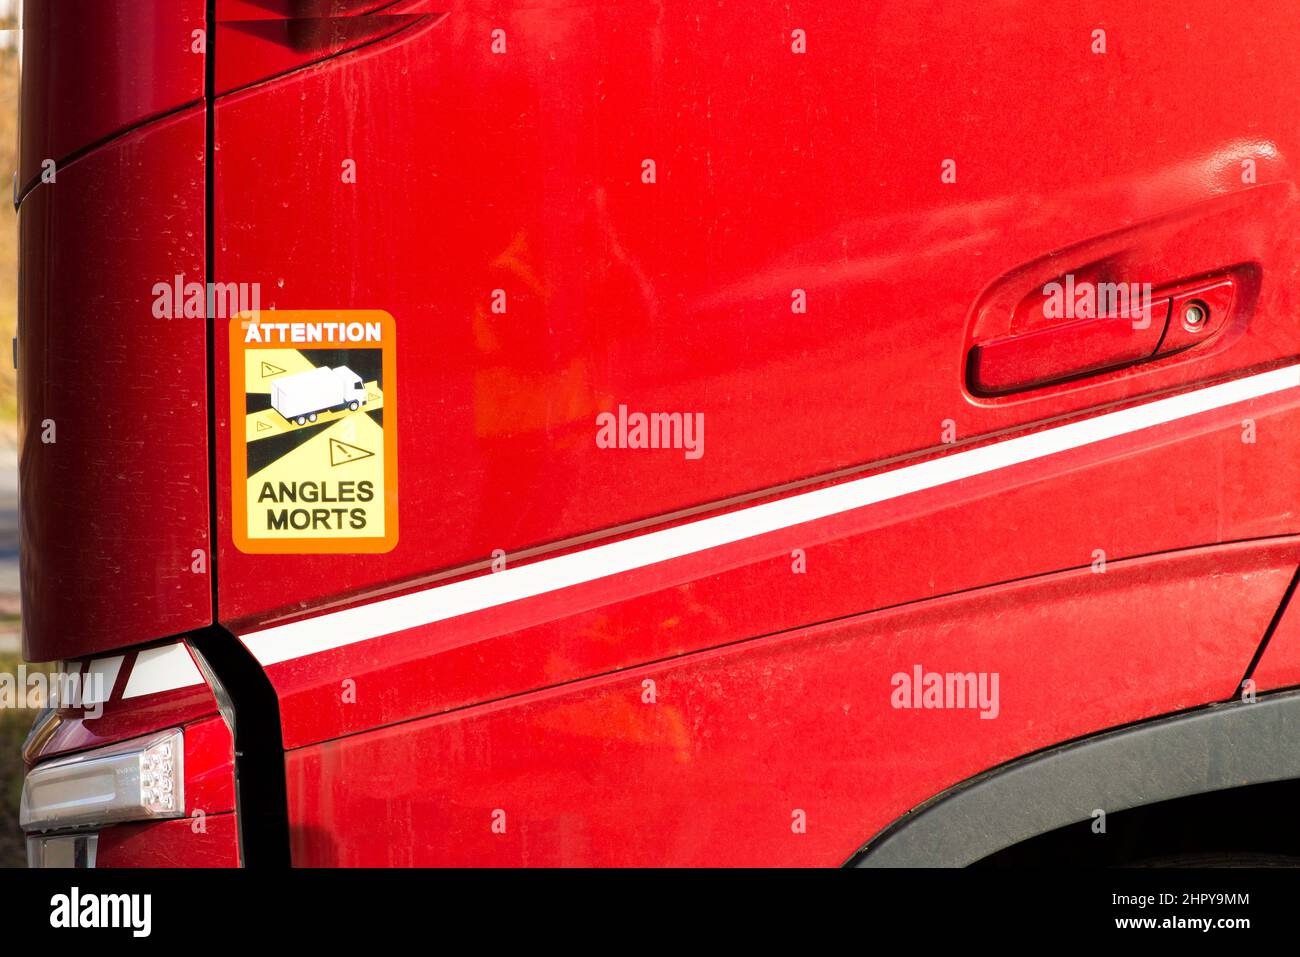 Roznov Tschechische Rep Feb 18. 2022 Achtung Winkel Morts LKW Aufkleber blinde Flecken obligatorisch auf einer roten LKW-Tür. Stockfoto